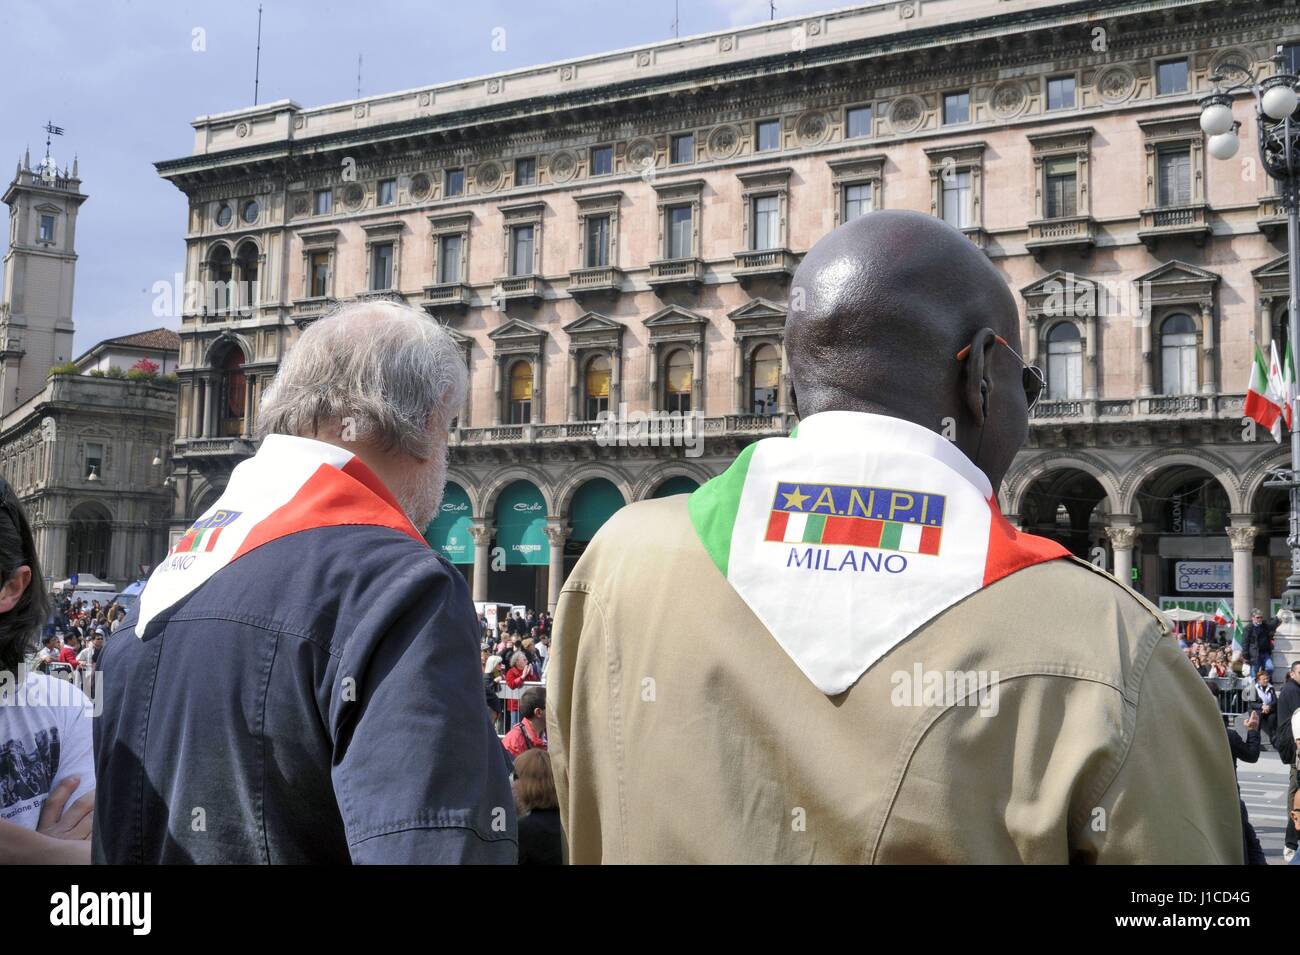 Le 25 avril est célébrée chaque année dans toute l'Italie avec des fêtes et des manifestations pour se souvenir de la libération de nazi-fascisme. Banque D'Images